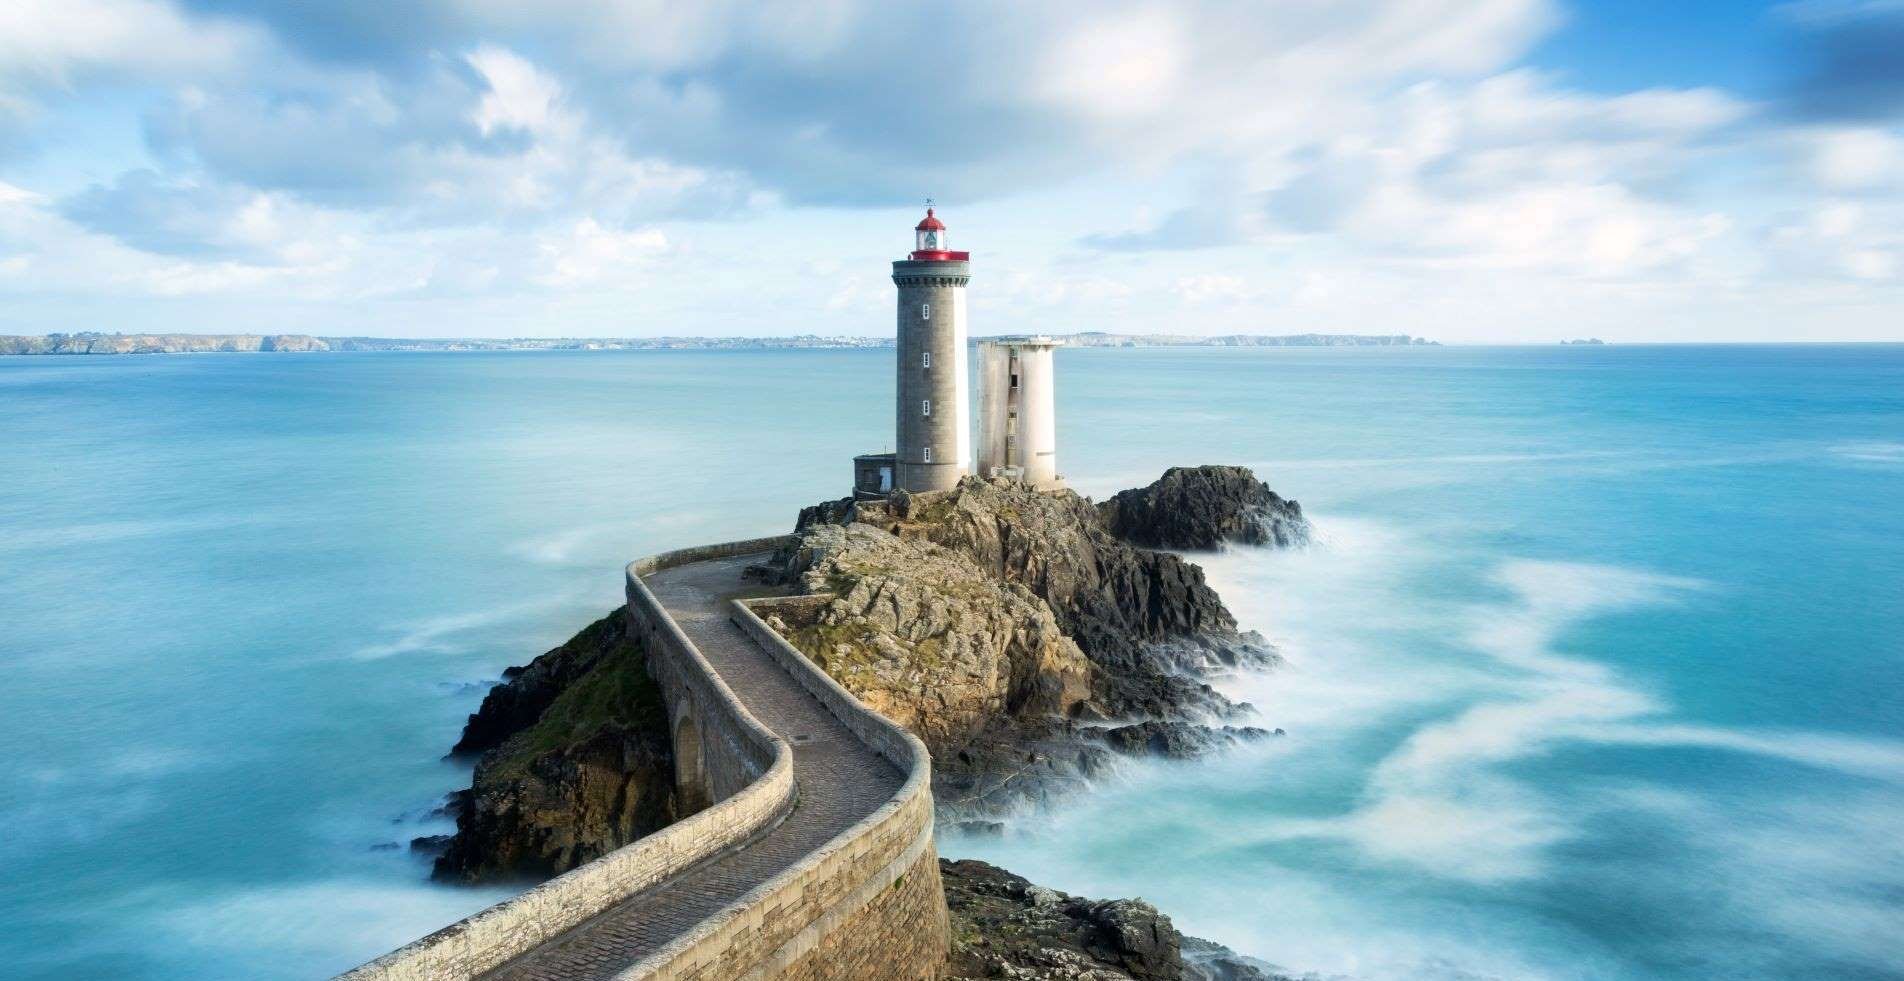 Paysage d'un phare sur un rocher dans la mer en Bretagne